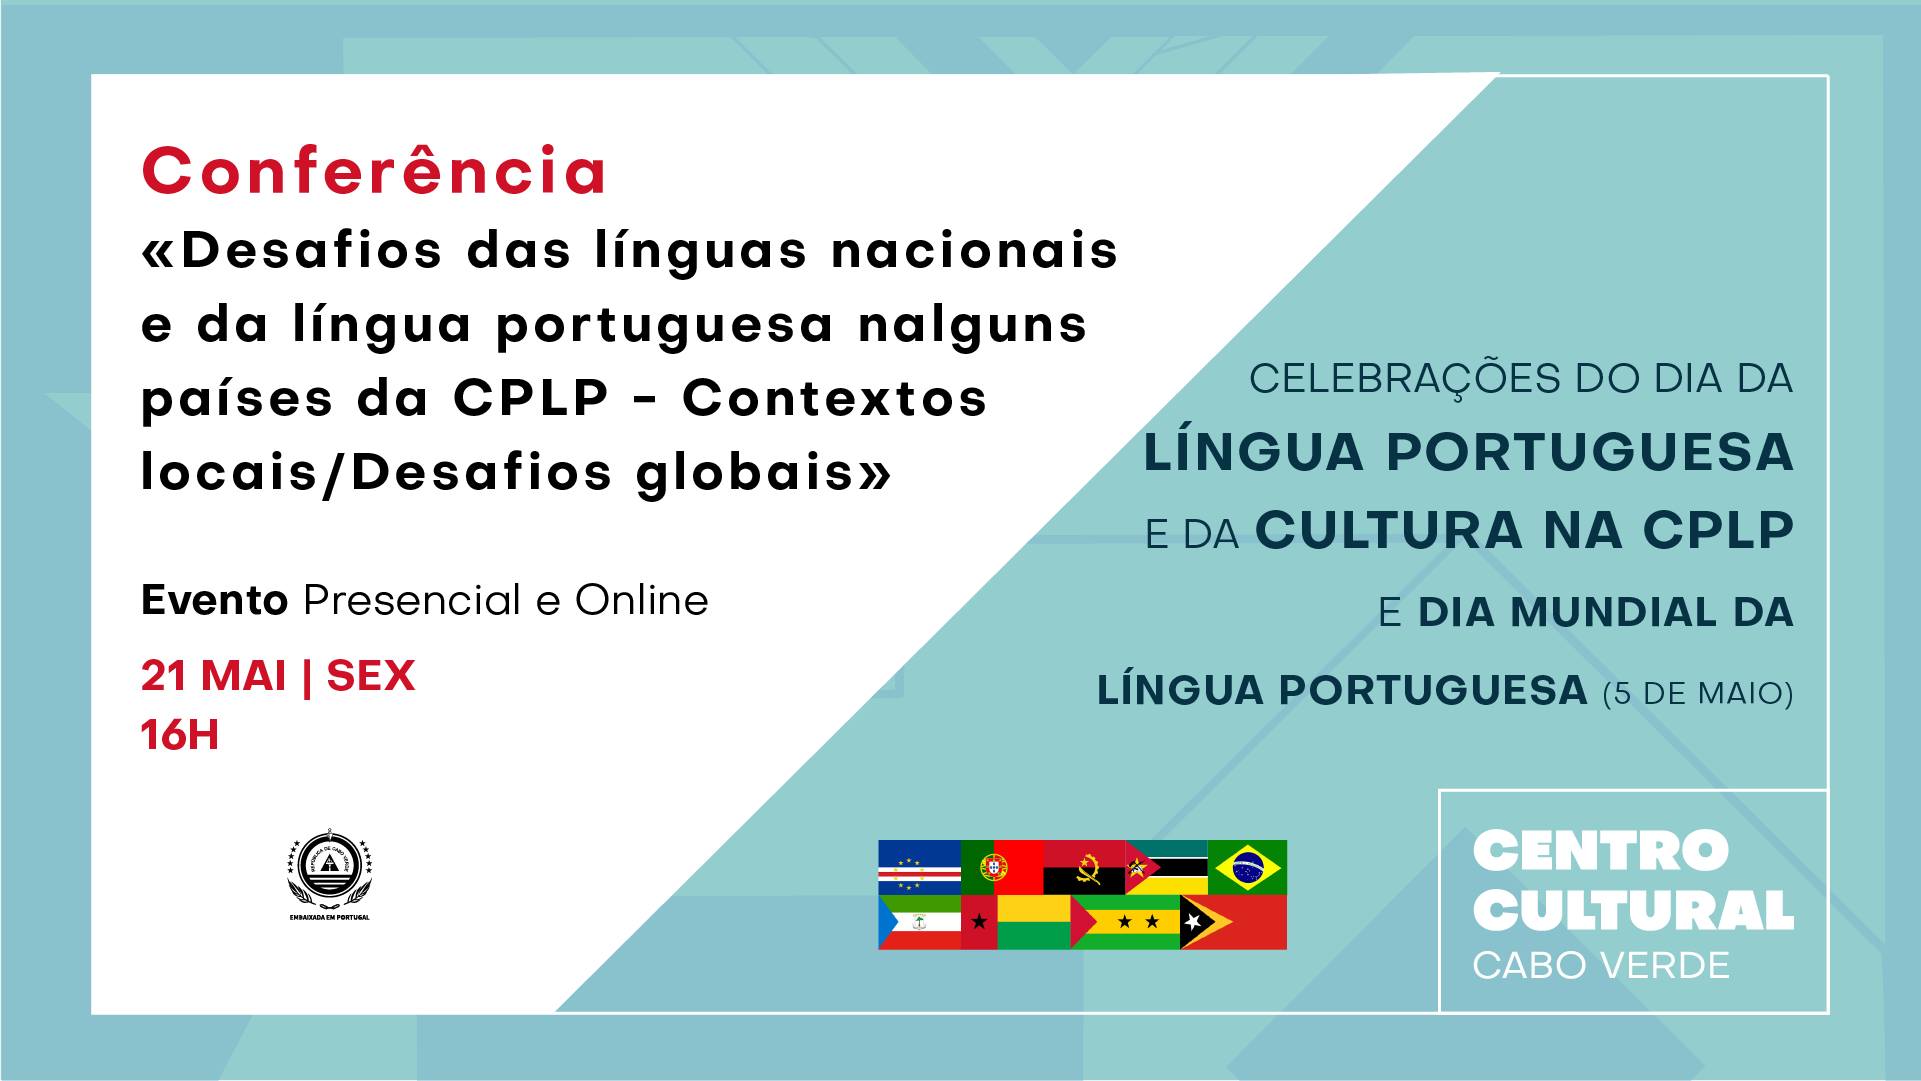 Conferência | Celebrações do Dia da Língua Portuguesa  e da Cultura na CPLP